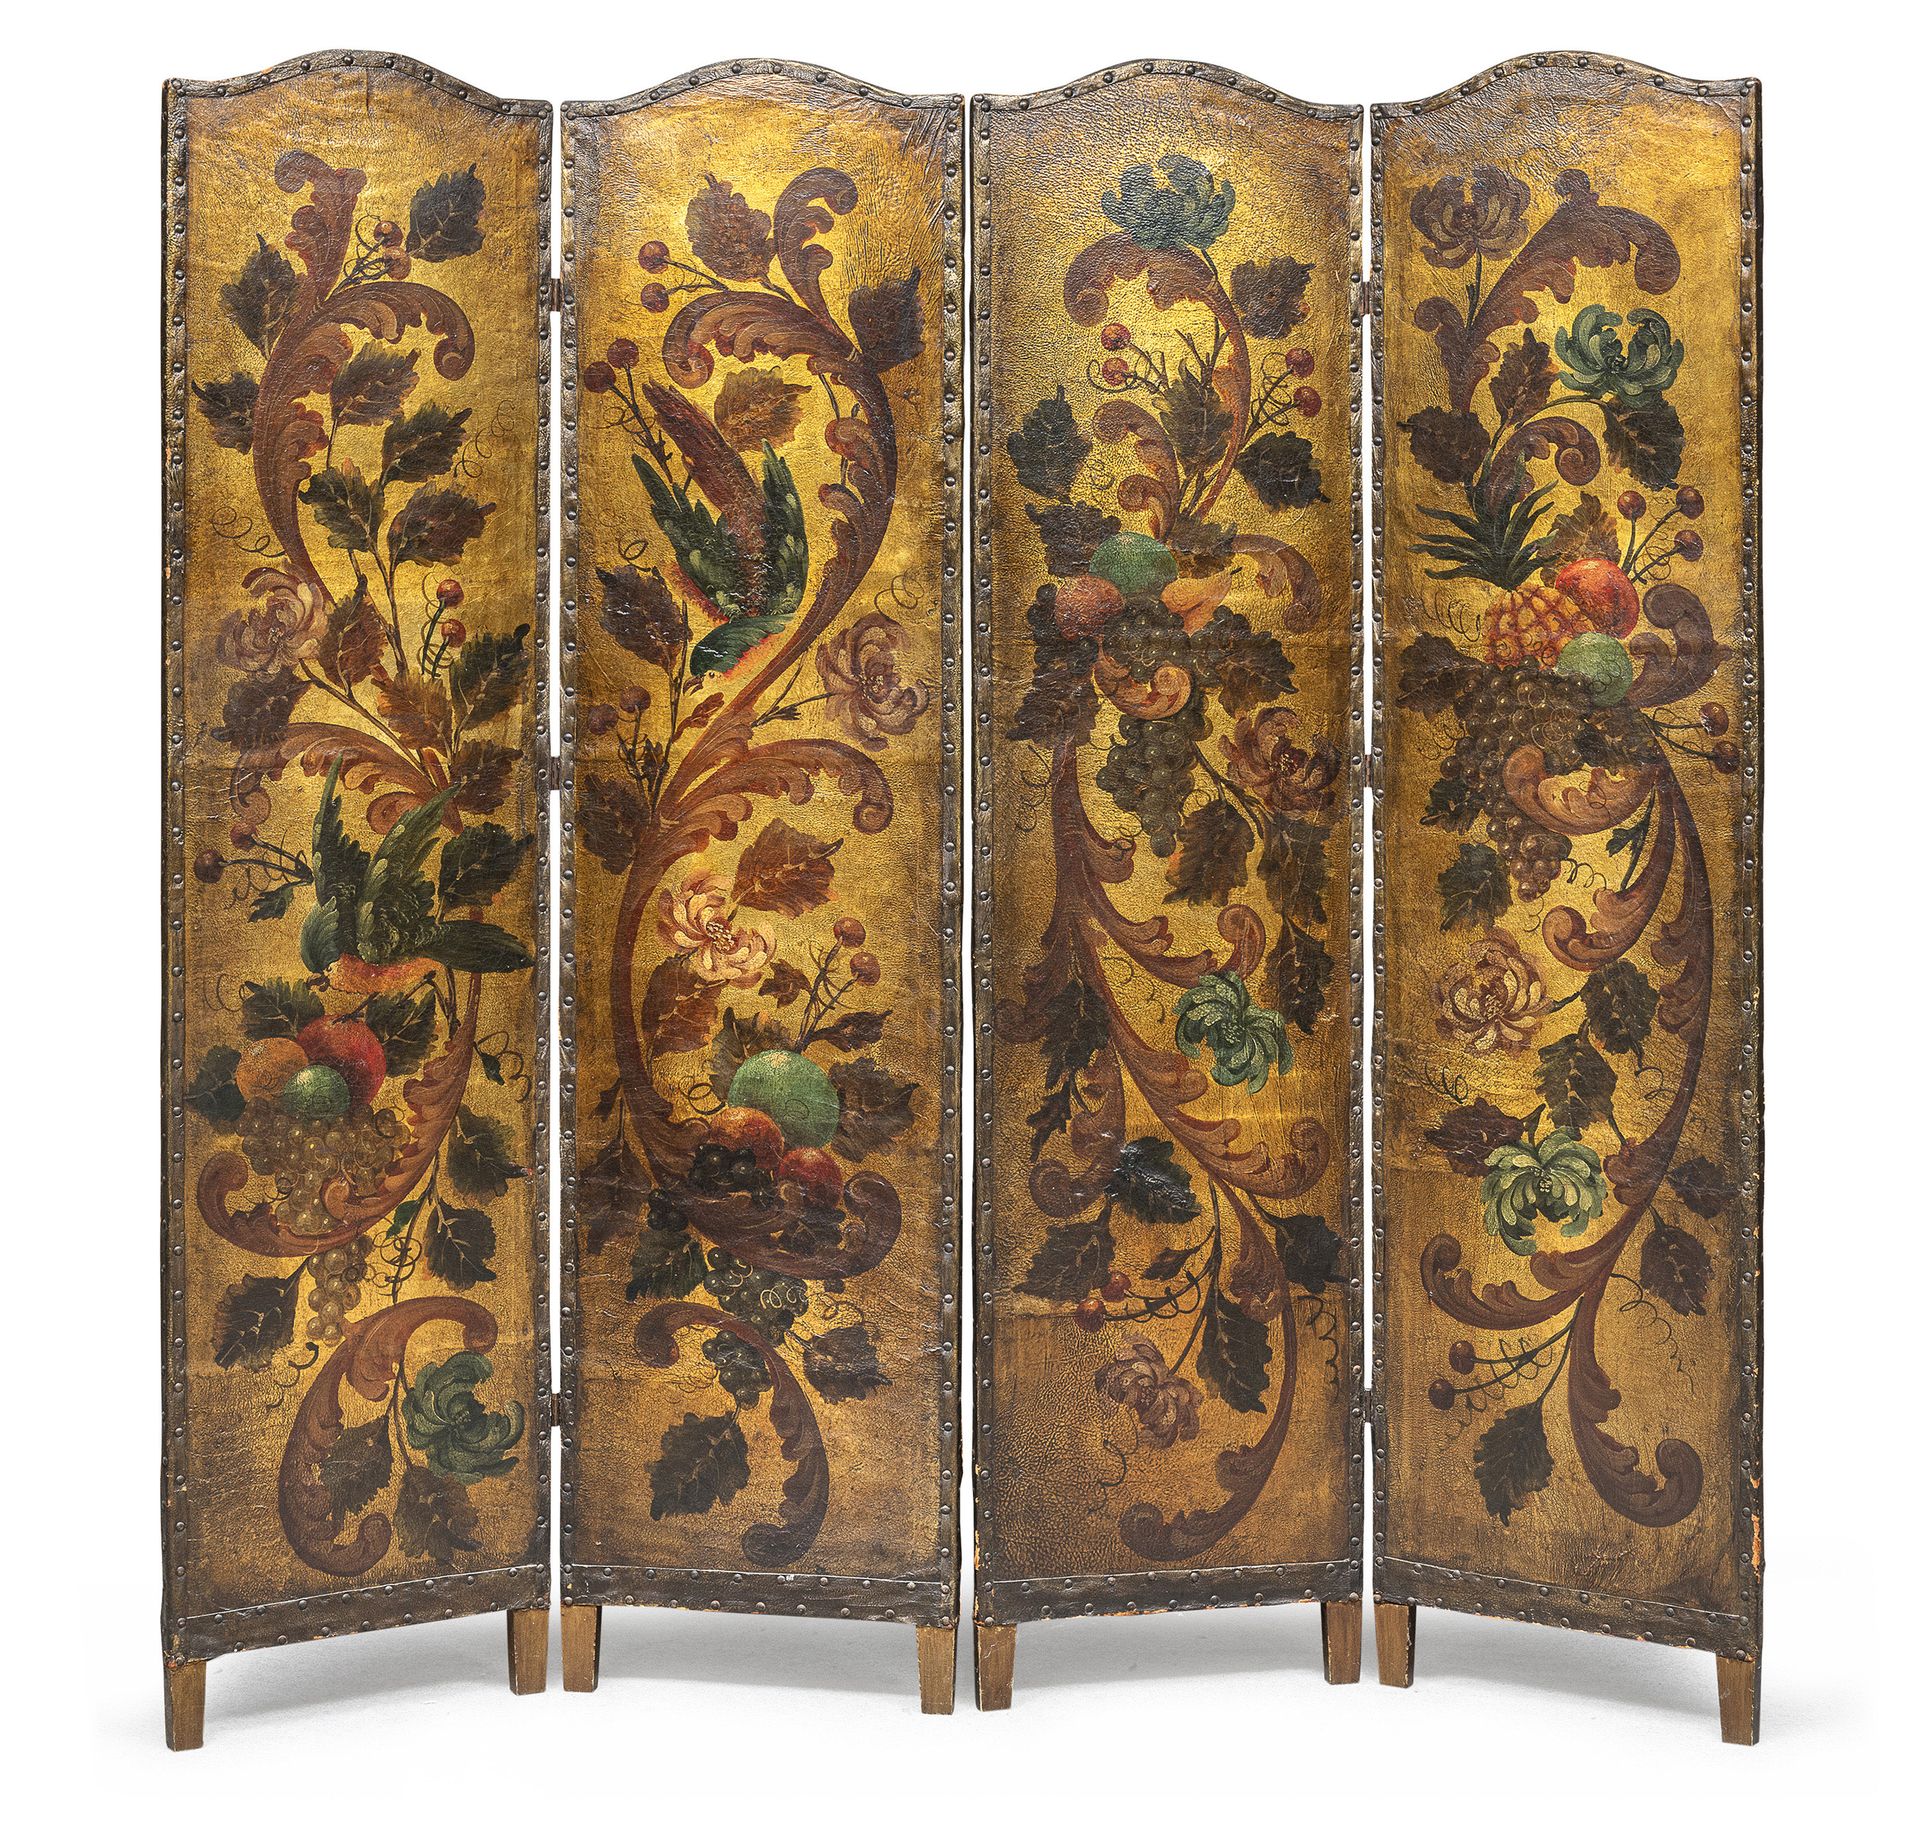 Null 科尔多瓦皮革屏风，19世纪初
有四个门，完全是用大的多色的ramages画的鹦鹉。木轴。
门的尺寸为185 x 45厘米。 
门被分成两对。 

产地&hellip;